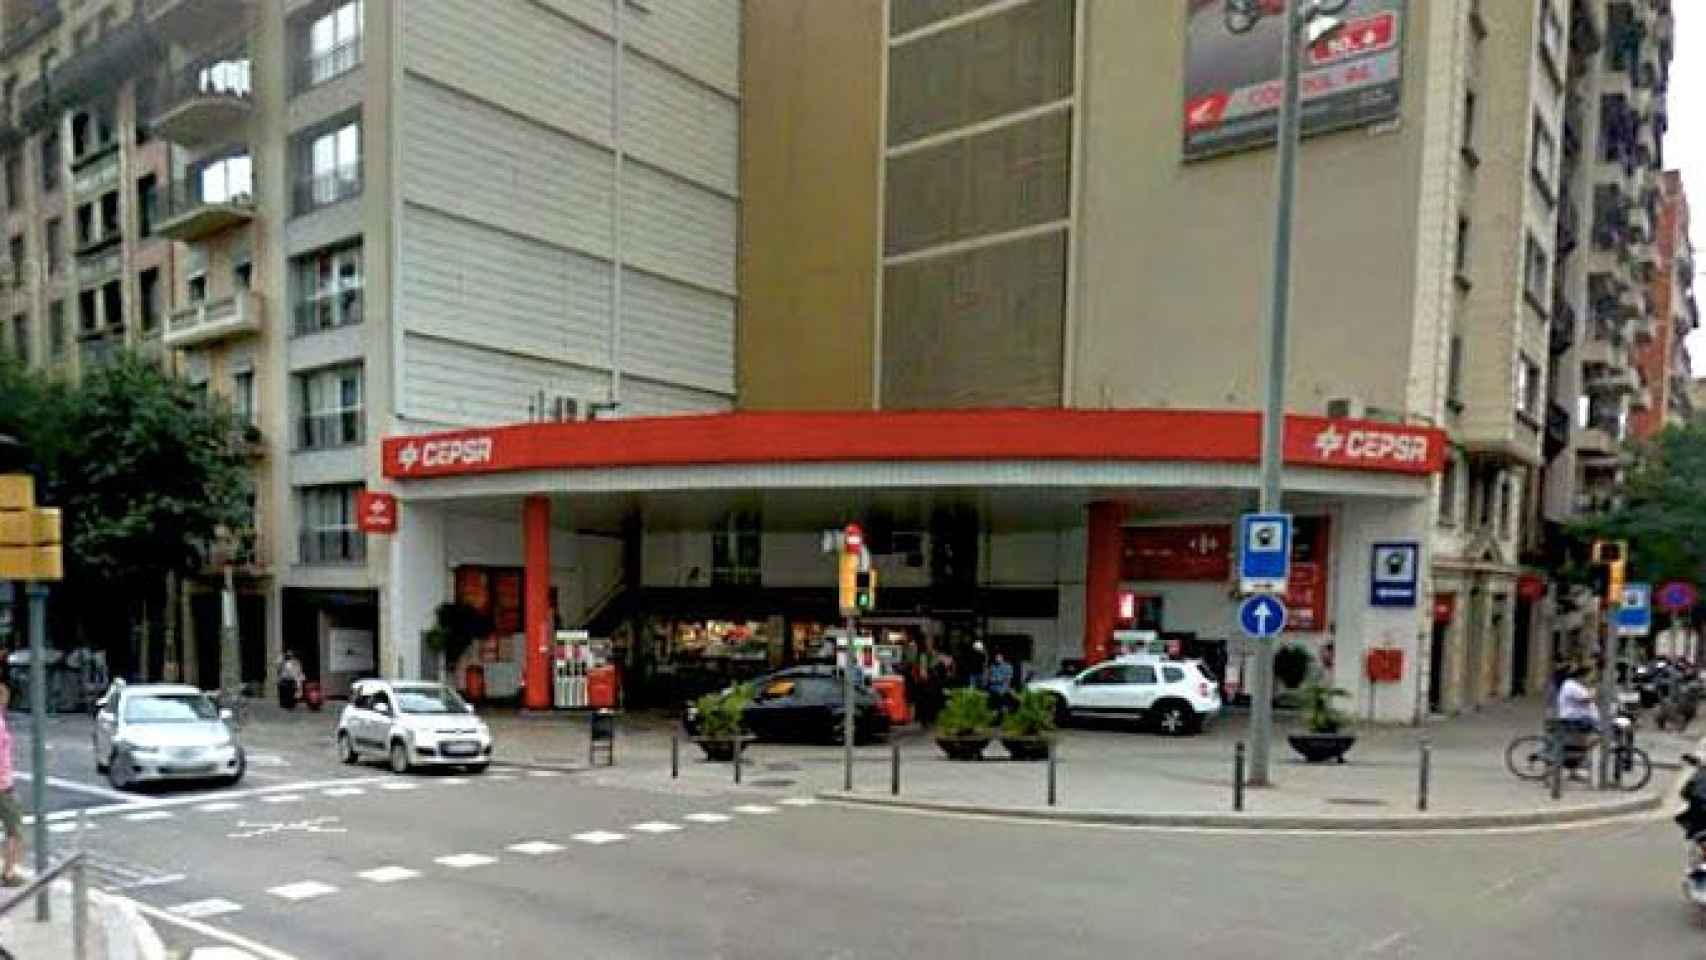 La gasolinera situada en el cruce de la calle Aragón con Casanova de Barcelona en el que ha tenido lugar el atropello mortal / CG